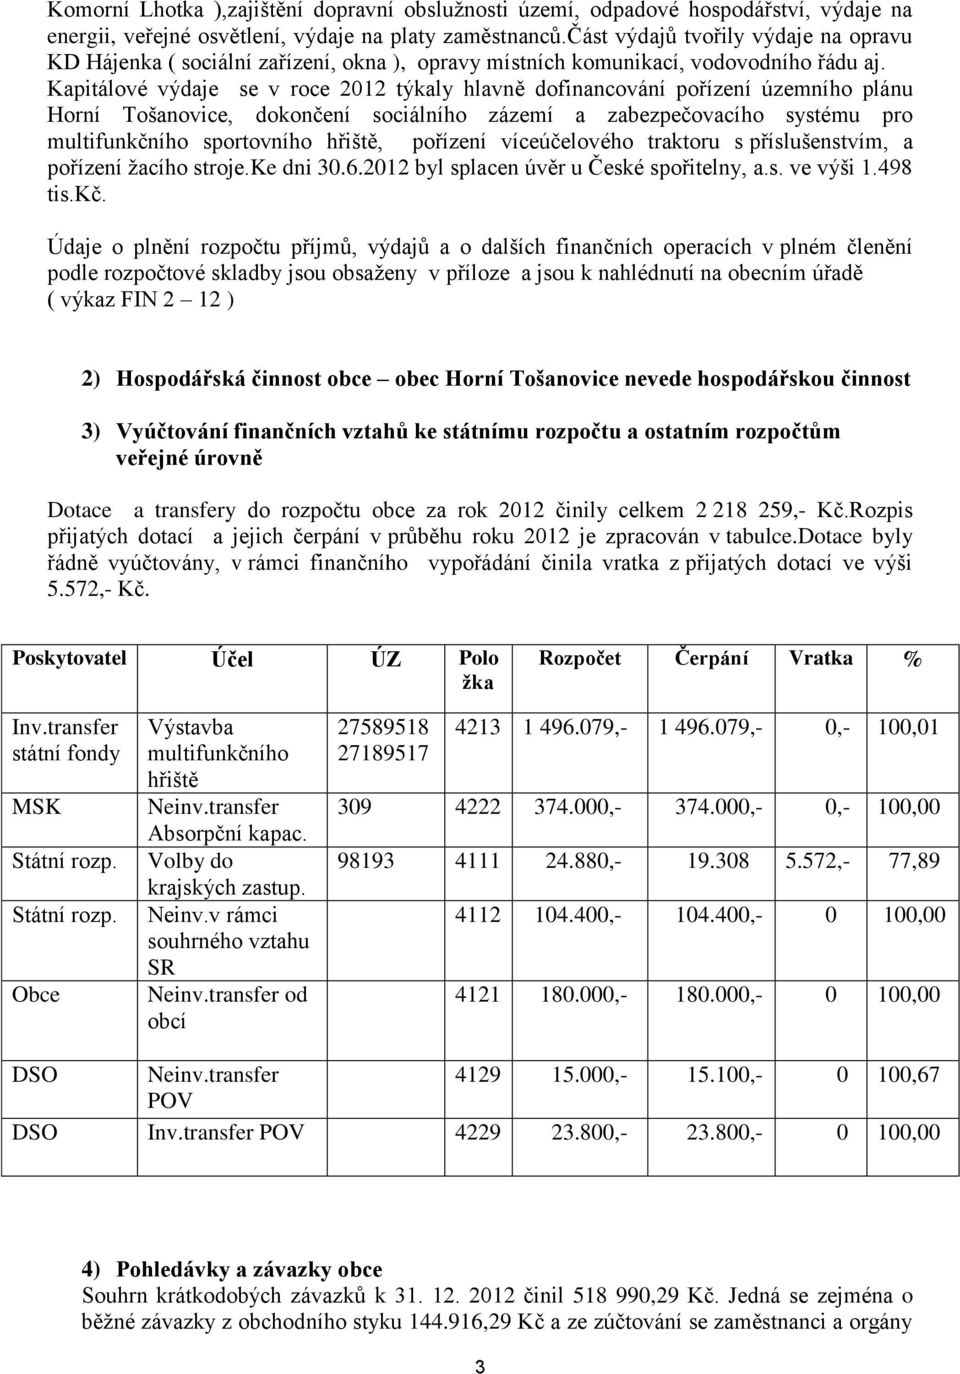 Kapitálové výdaje se v roce 2012 týkaly hlavně dofinancování pořízení územního plánu Horní Tošanovice, dokončení sociálního zázemí a zabezpečovacího systému pro multifunkčního sportovního hřiště,